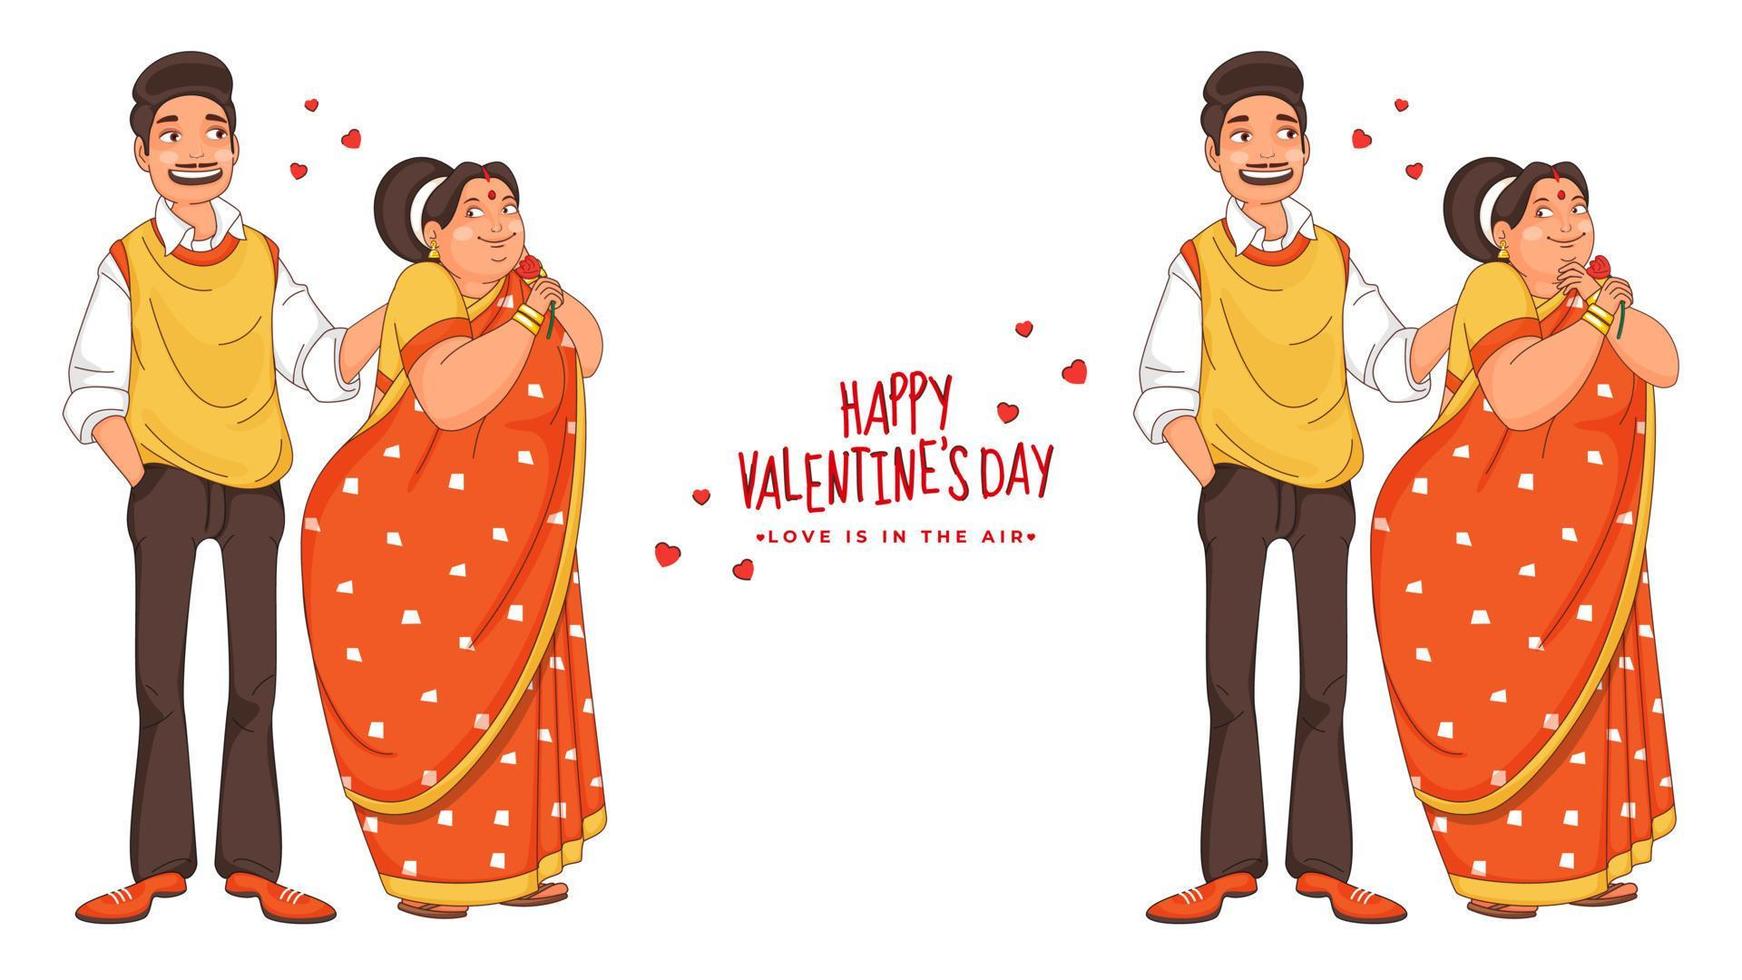 dos tipos imagen de dibujos animados amoroso Pareja personaje en en pie actitud para contento San Valentín día, amor es en el aire concepto. vector